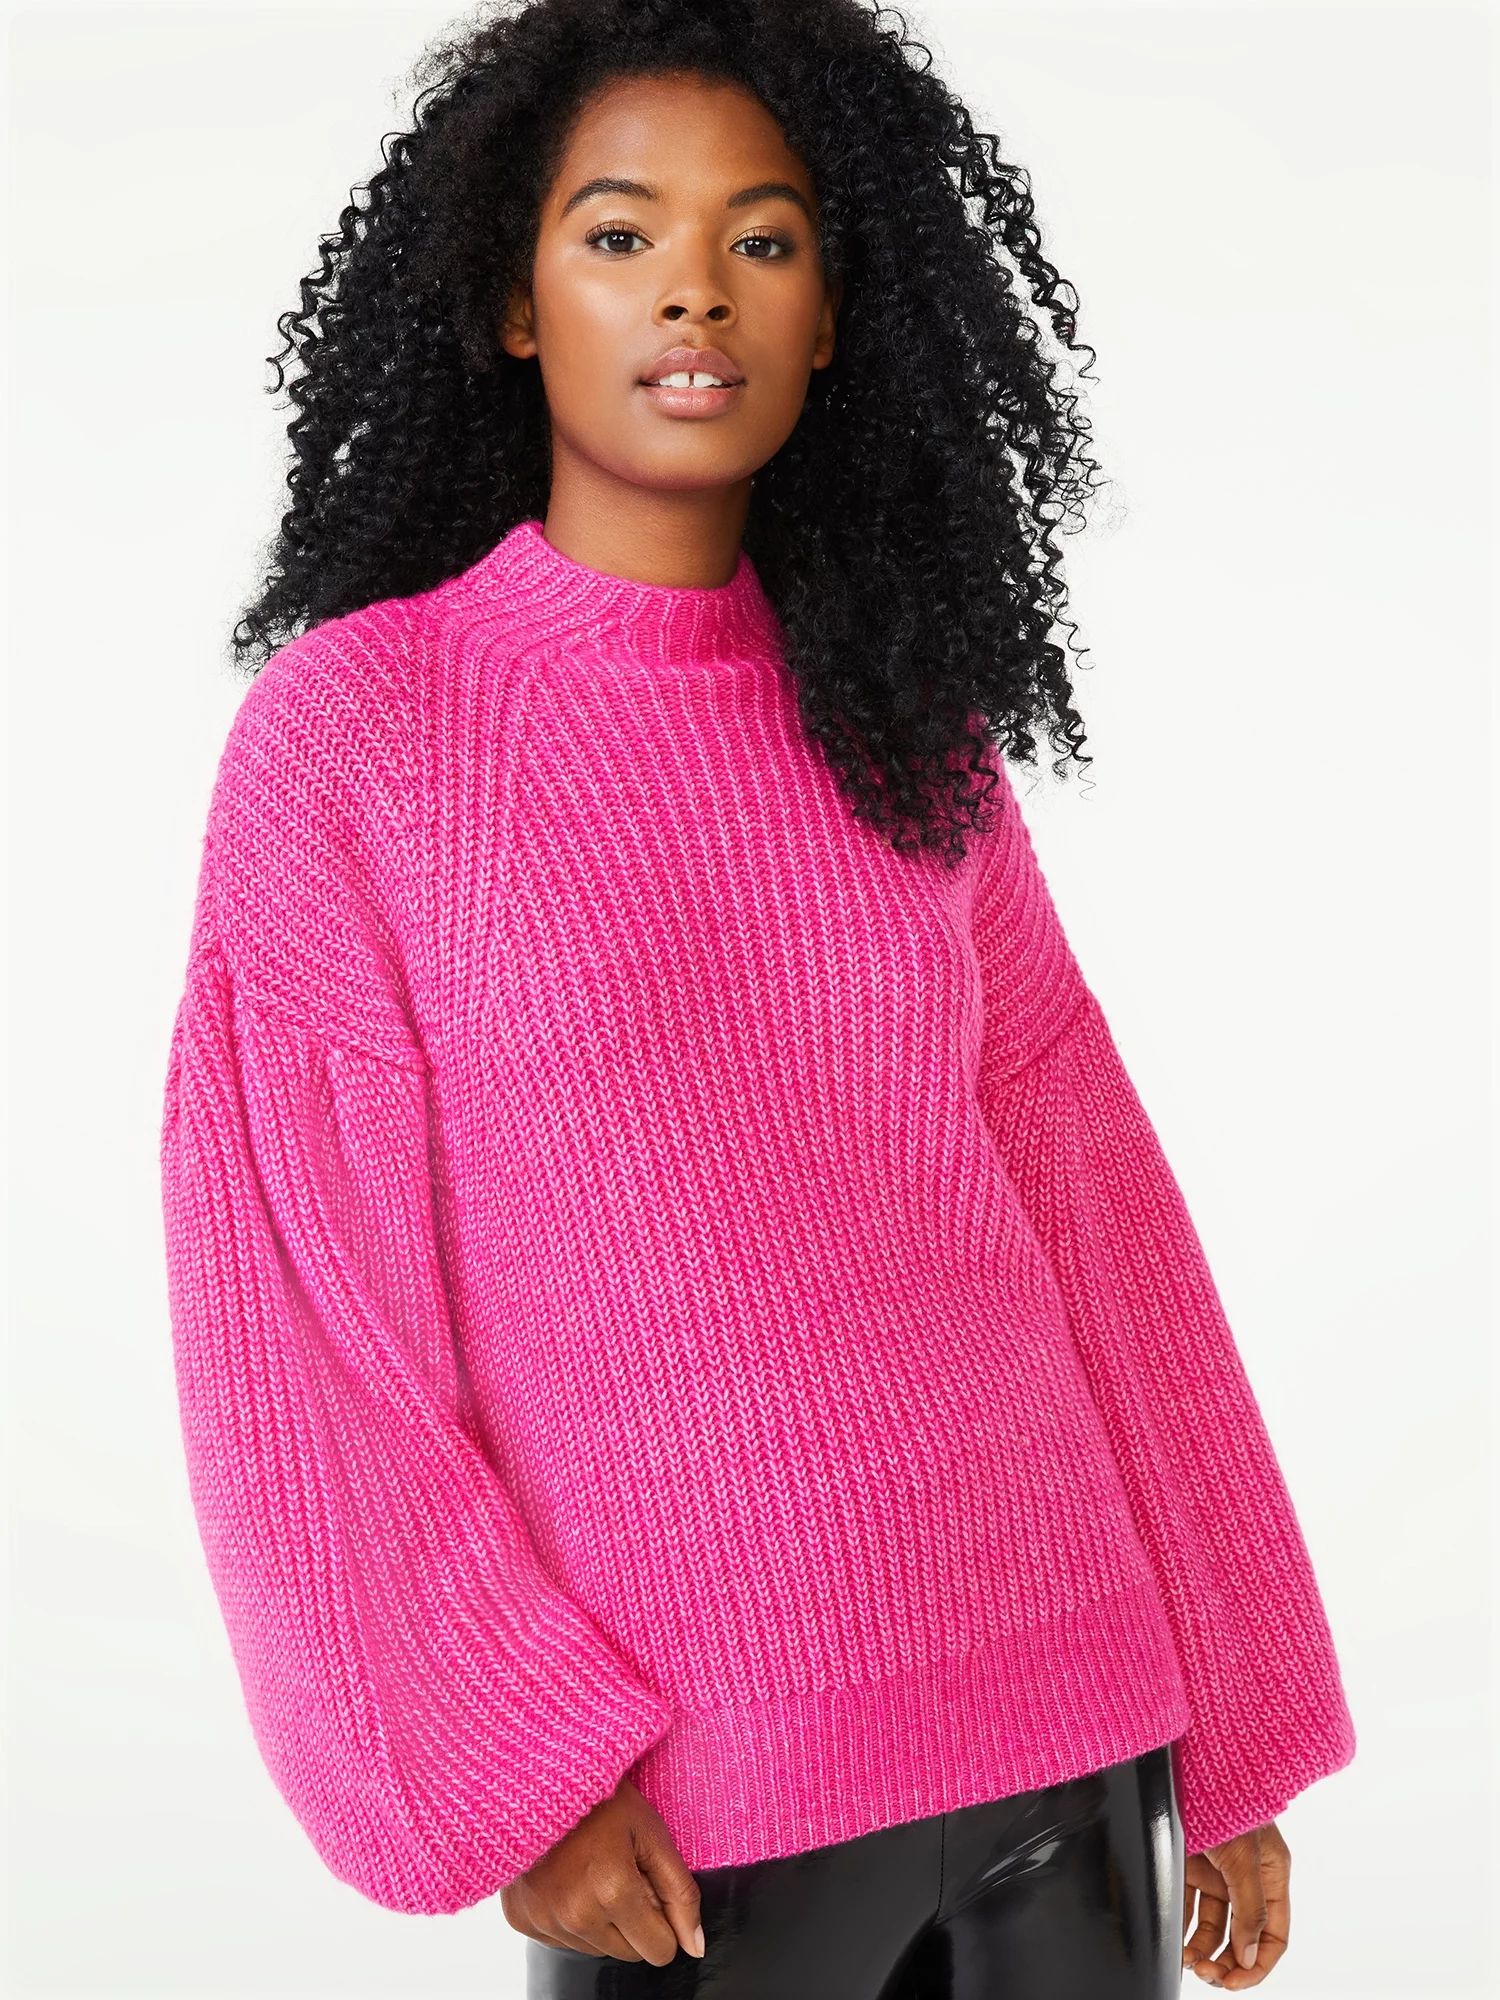 Scoop Women's Cozy Mock Neck Sweater with Balloon Sleeves | Walmart (US)